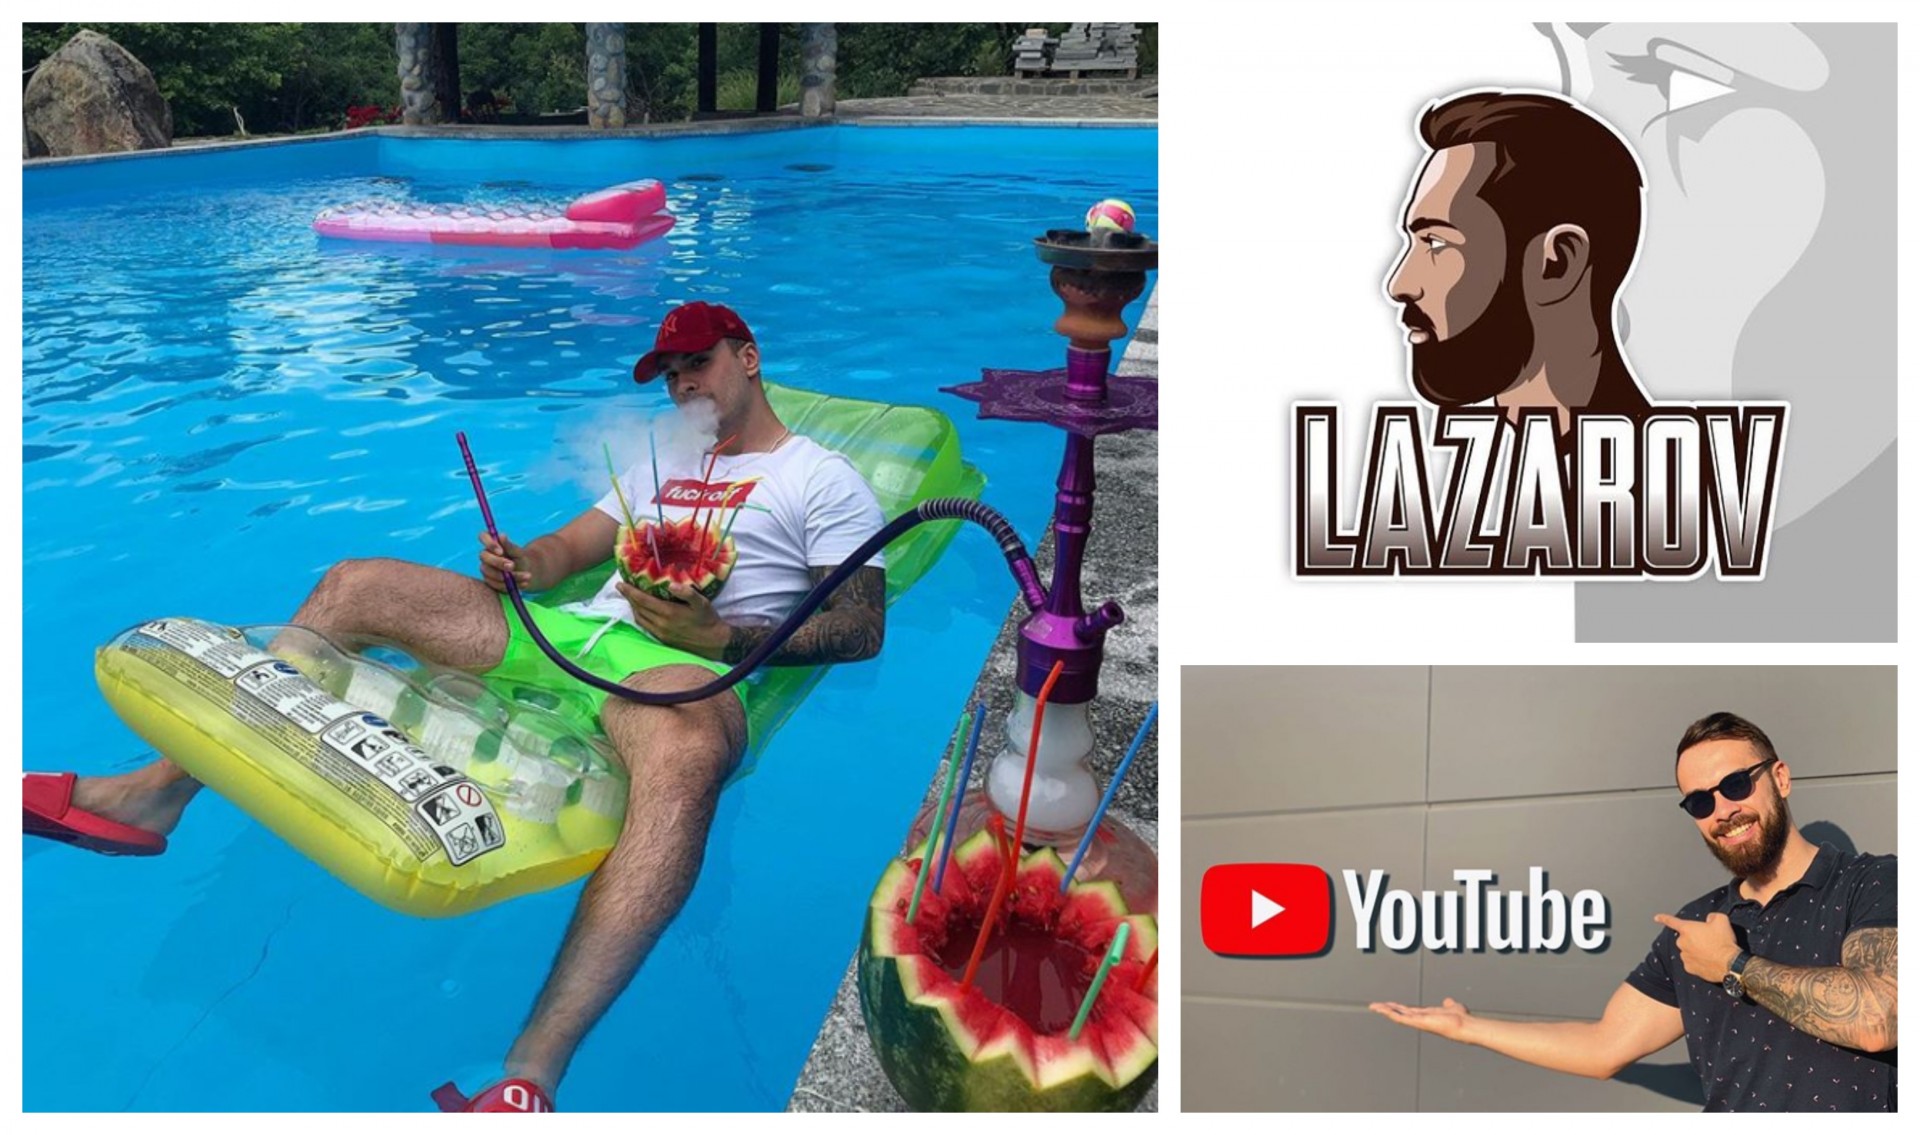 Стефан Лазаров заплива во Јутјуберските води: Eксклузивно за Хаштаг открива многу новости